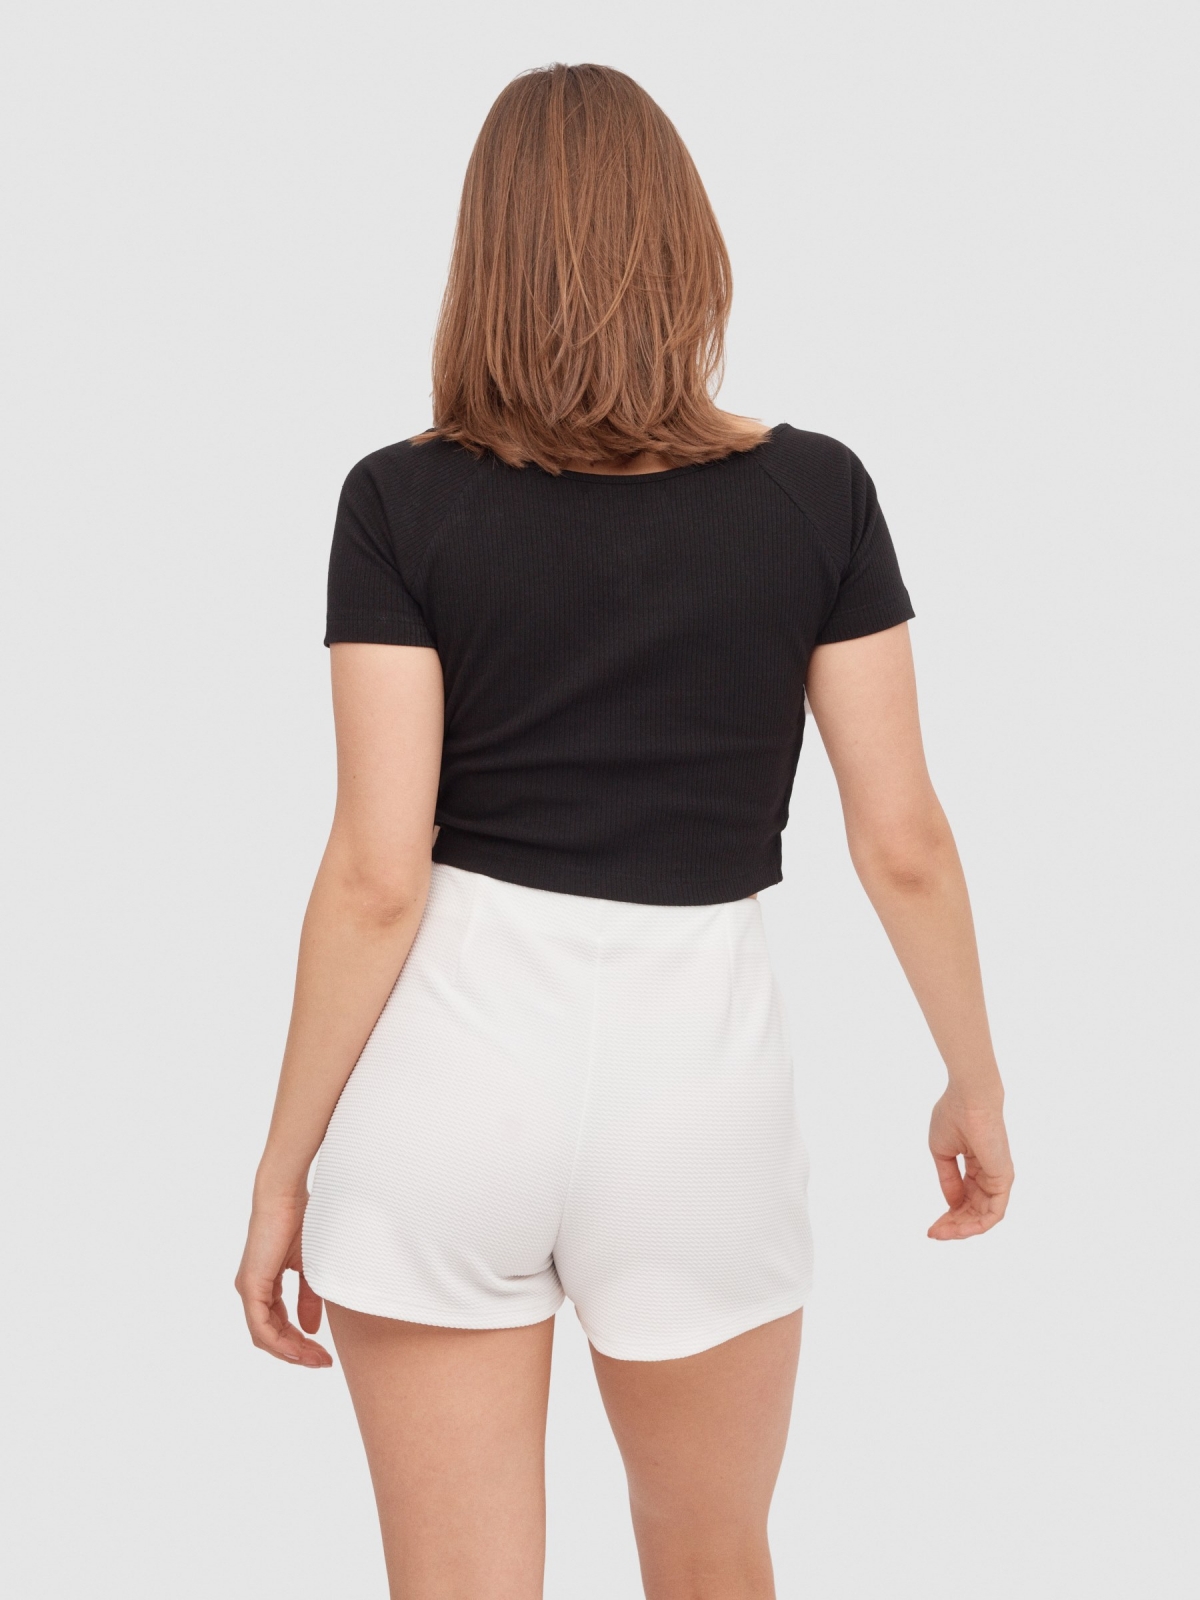 Mini skort skirt white middle back view